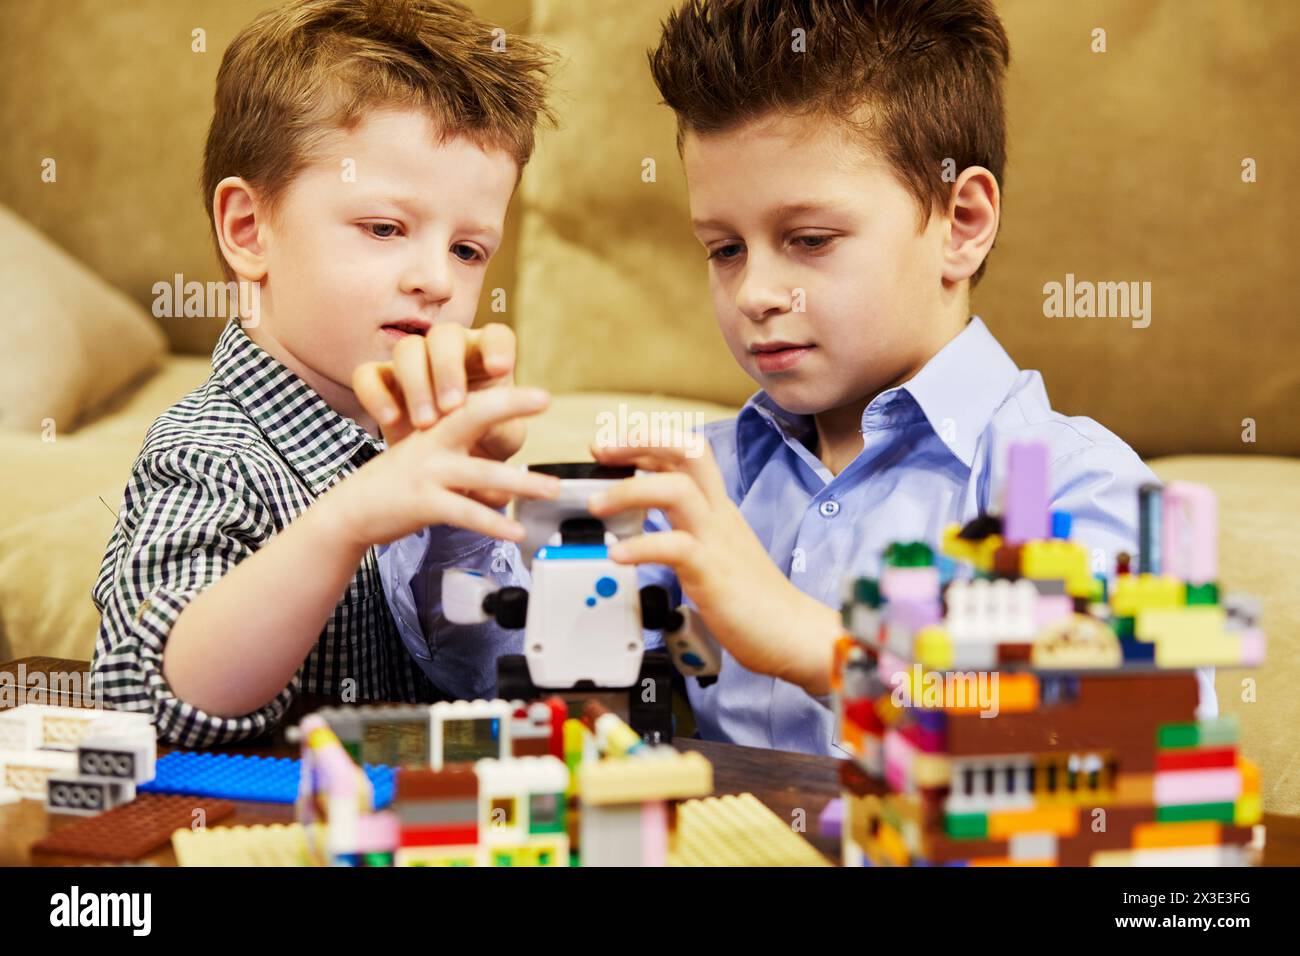 Deux garçons jouent avec des enfants construisant un kit de briques en plastique dans la chambre. Banque D'Images